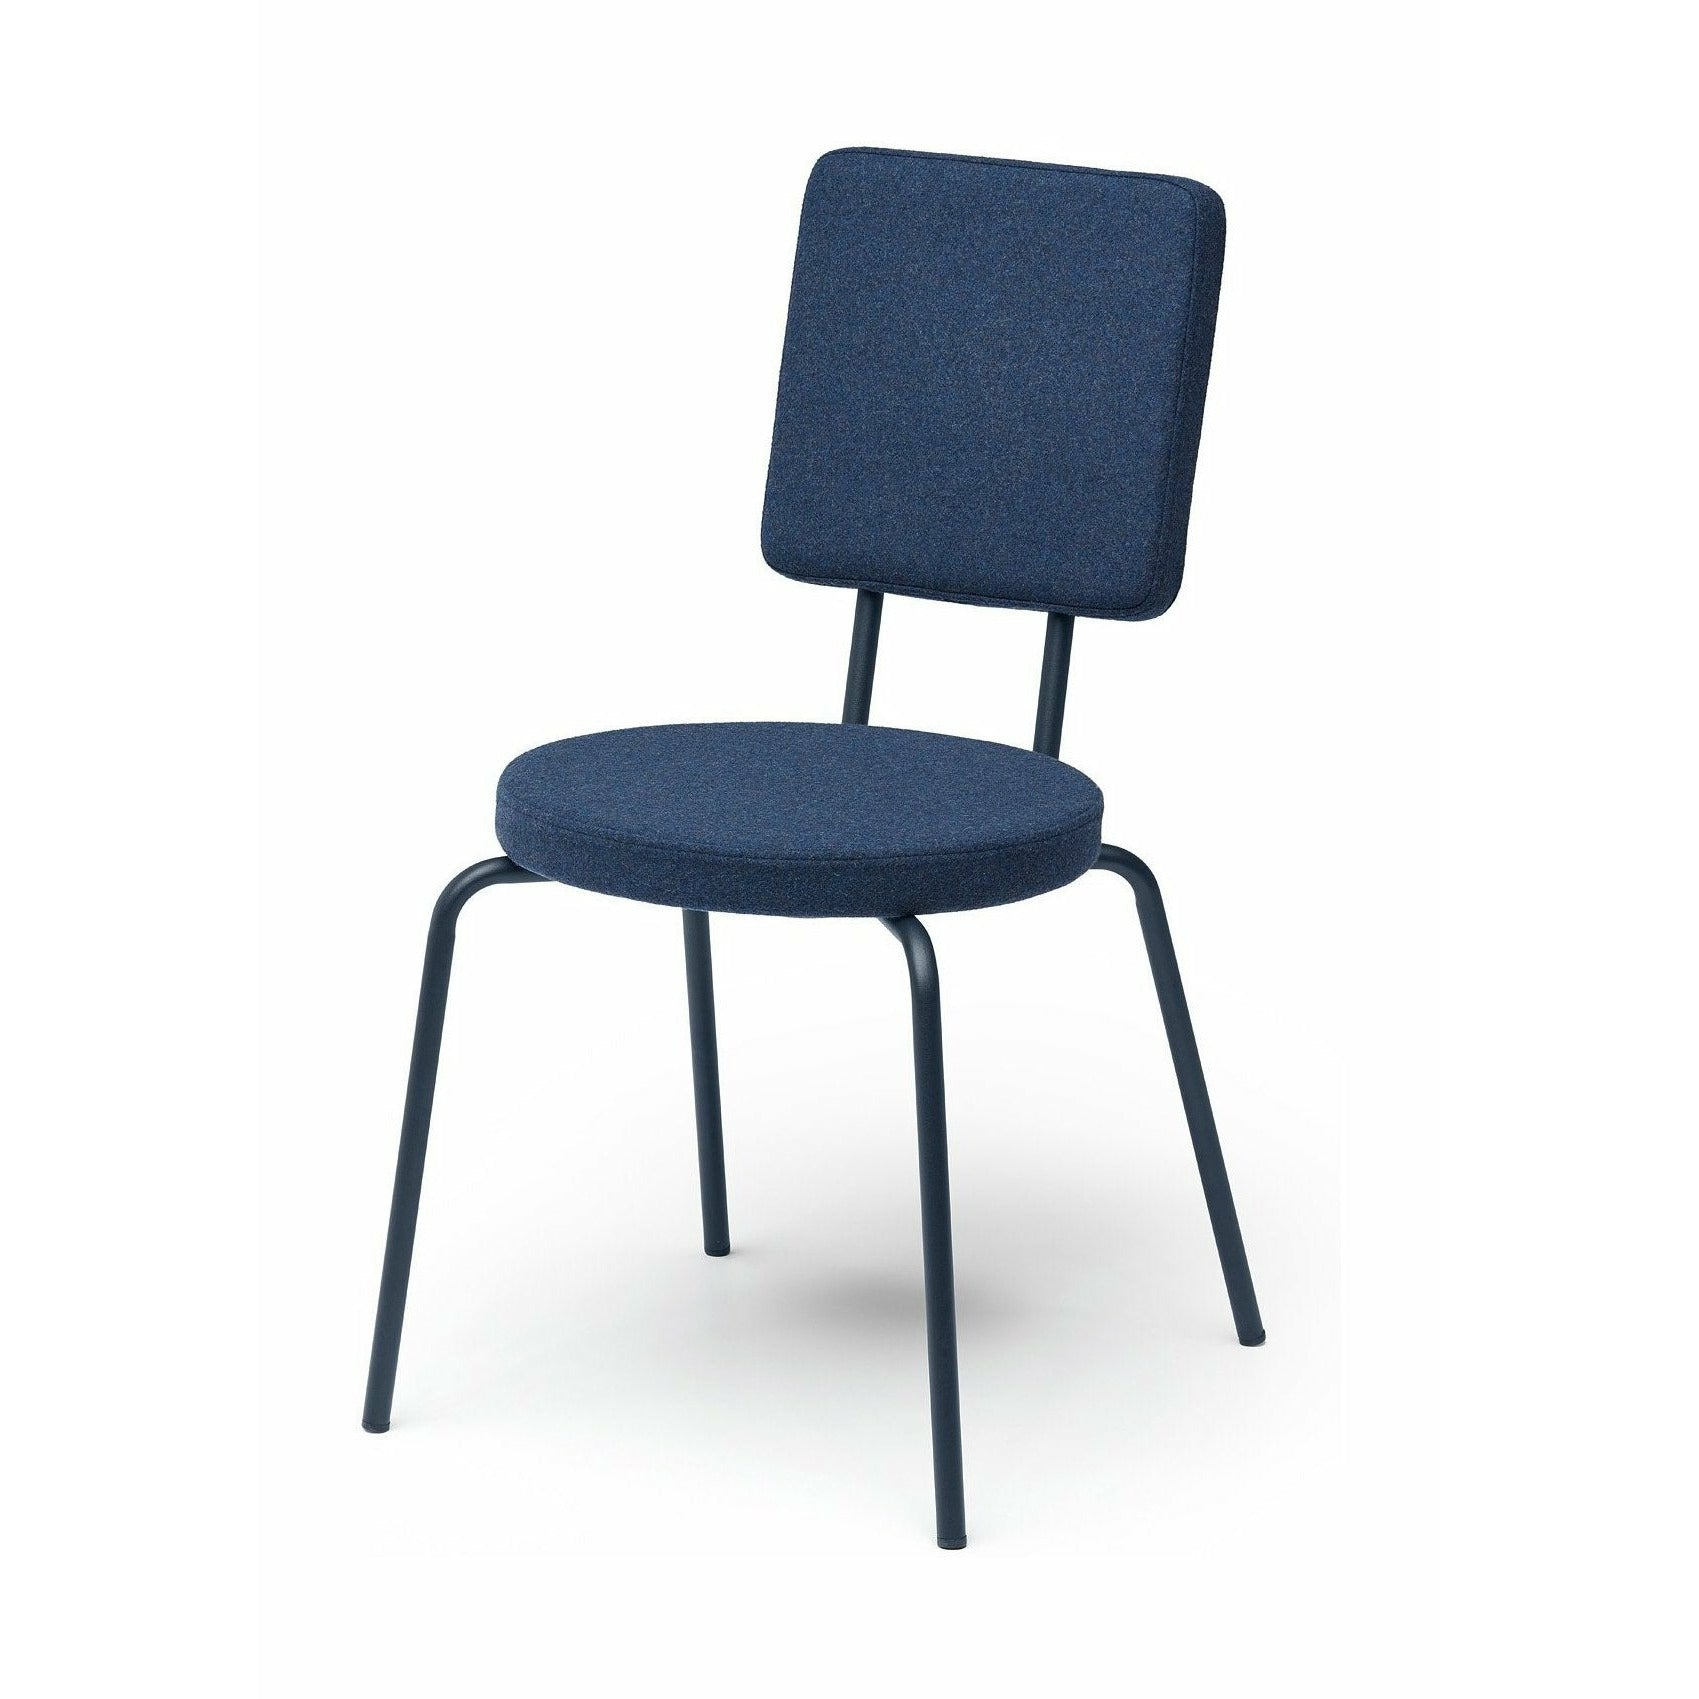 Puik Alternativ stol sete runde / ryggstøtte firkant, mørkeblå